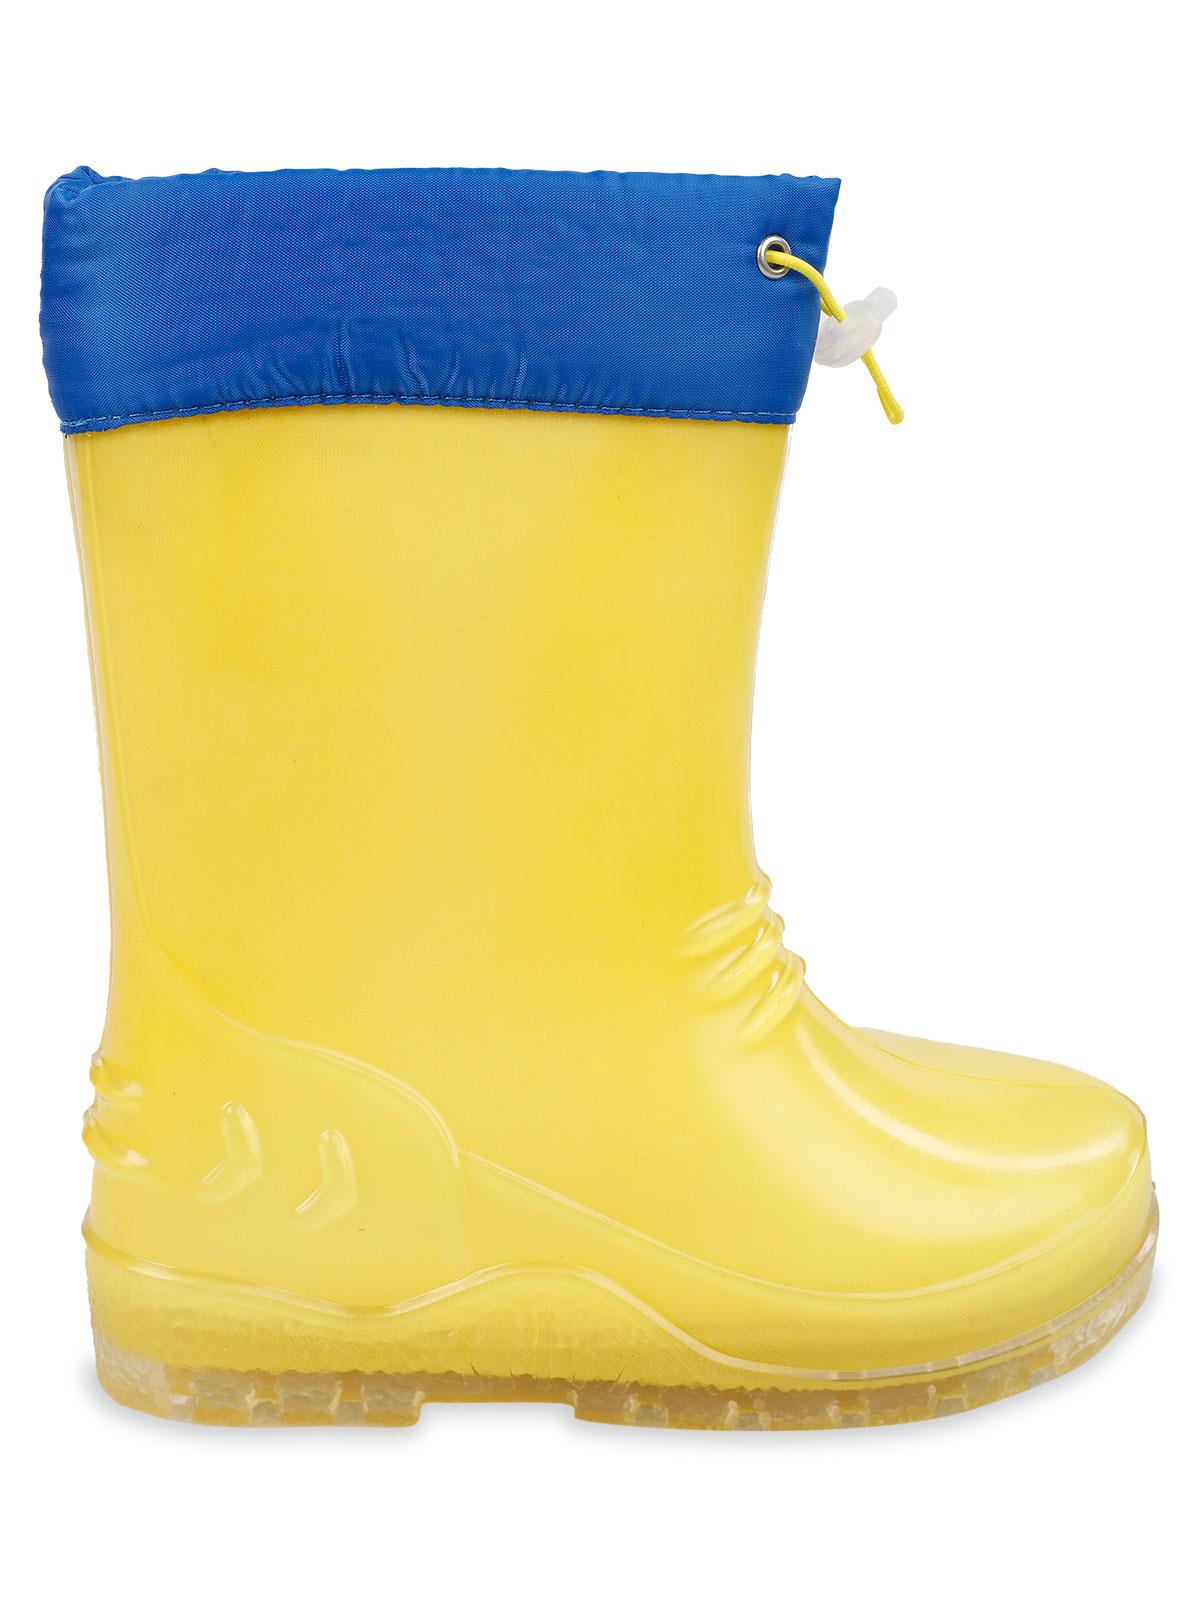 Civil Boots Erkek Çocuk Çizme 24-28 Numara Sarı